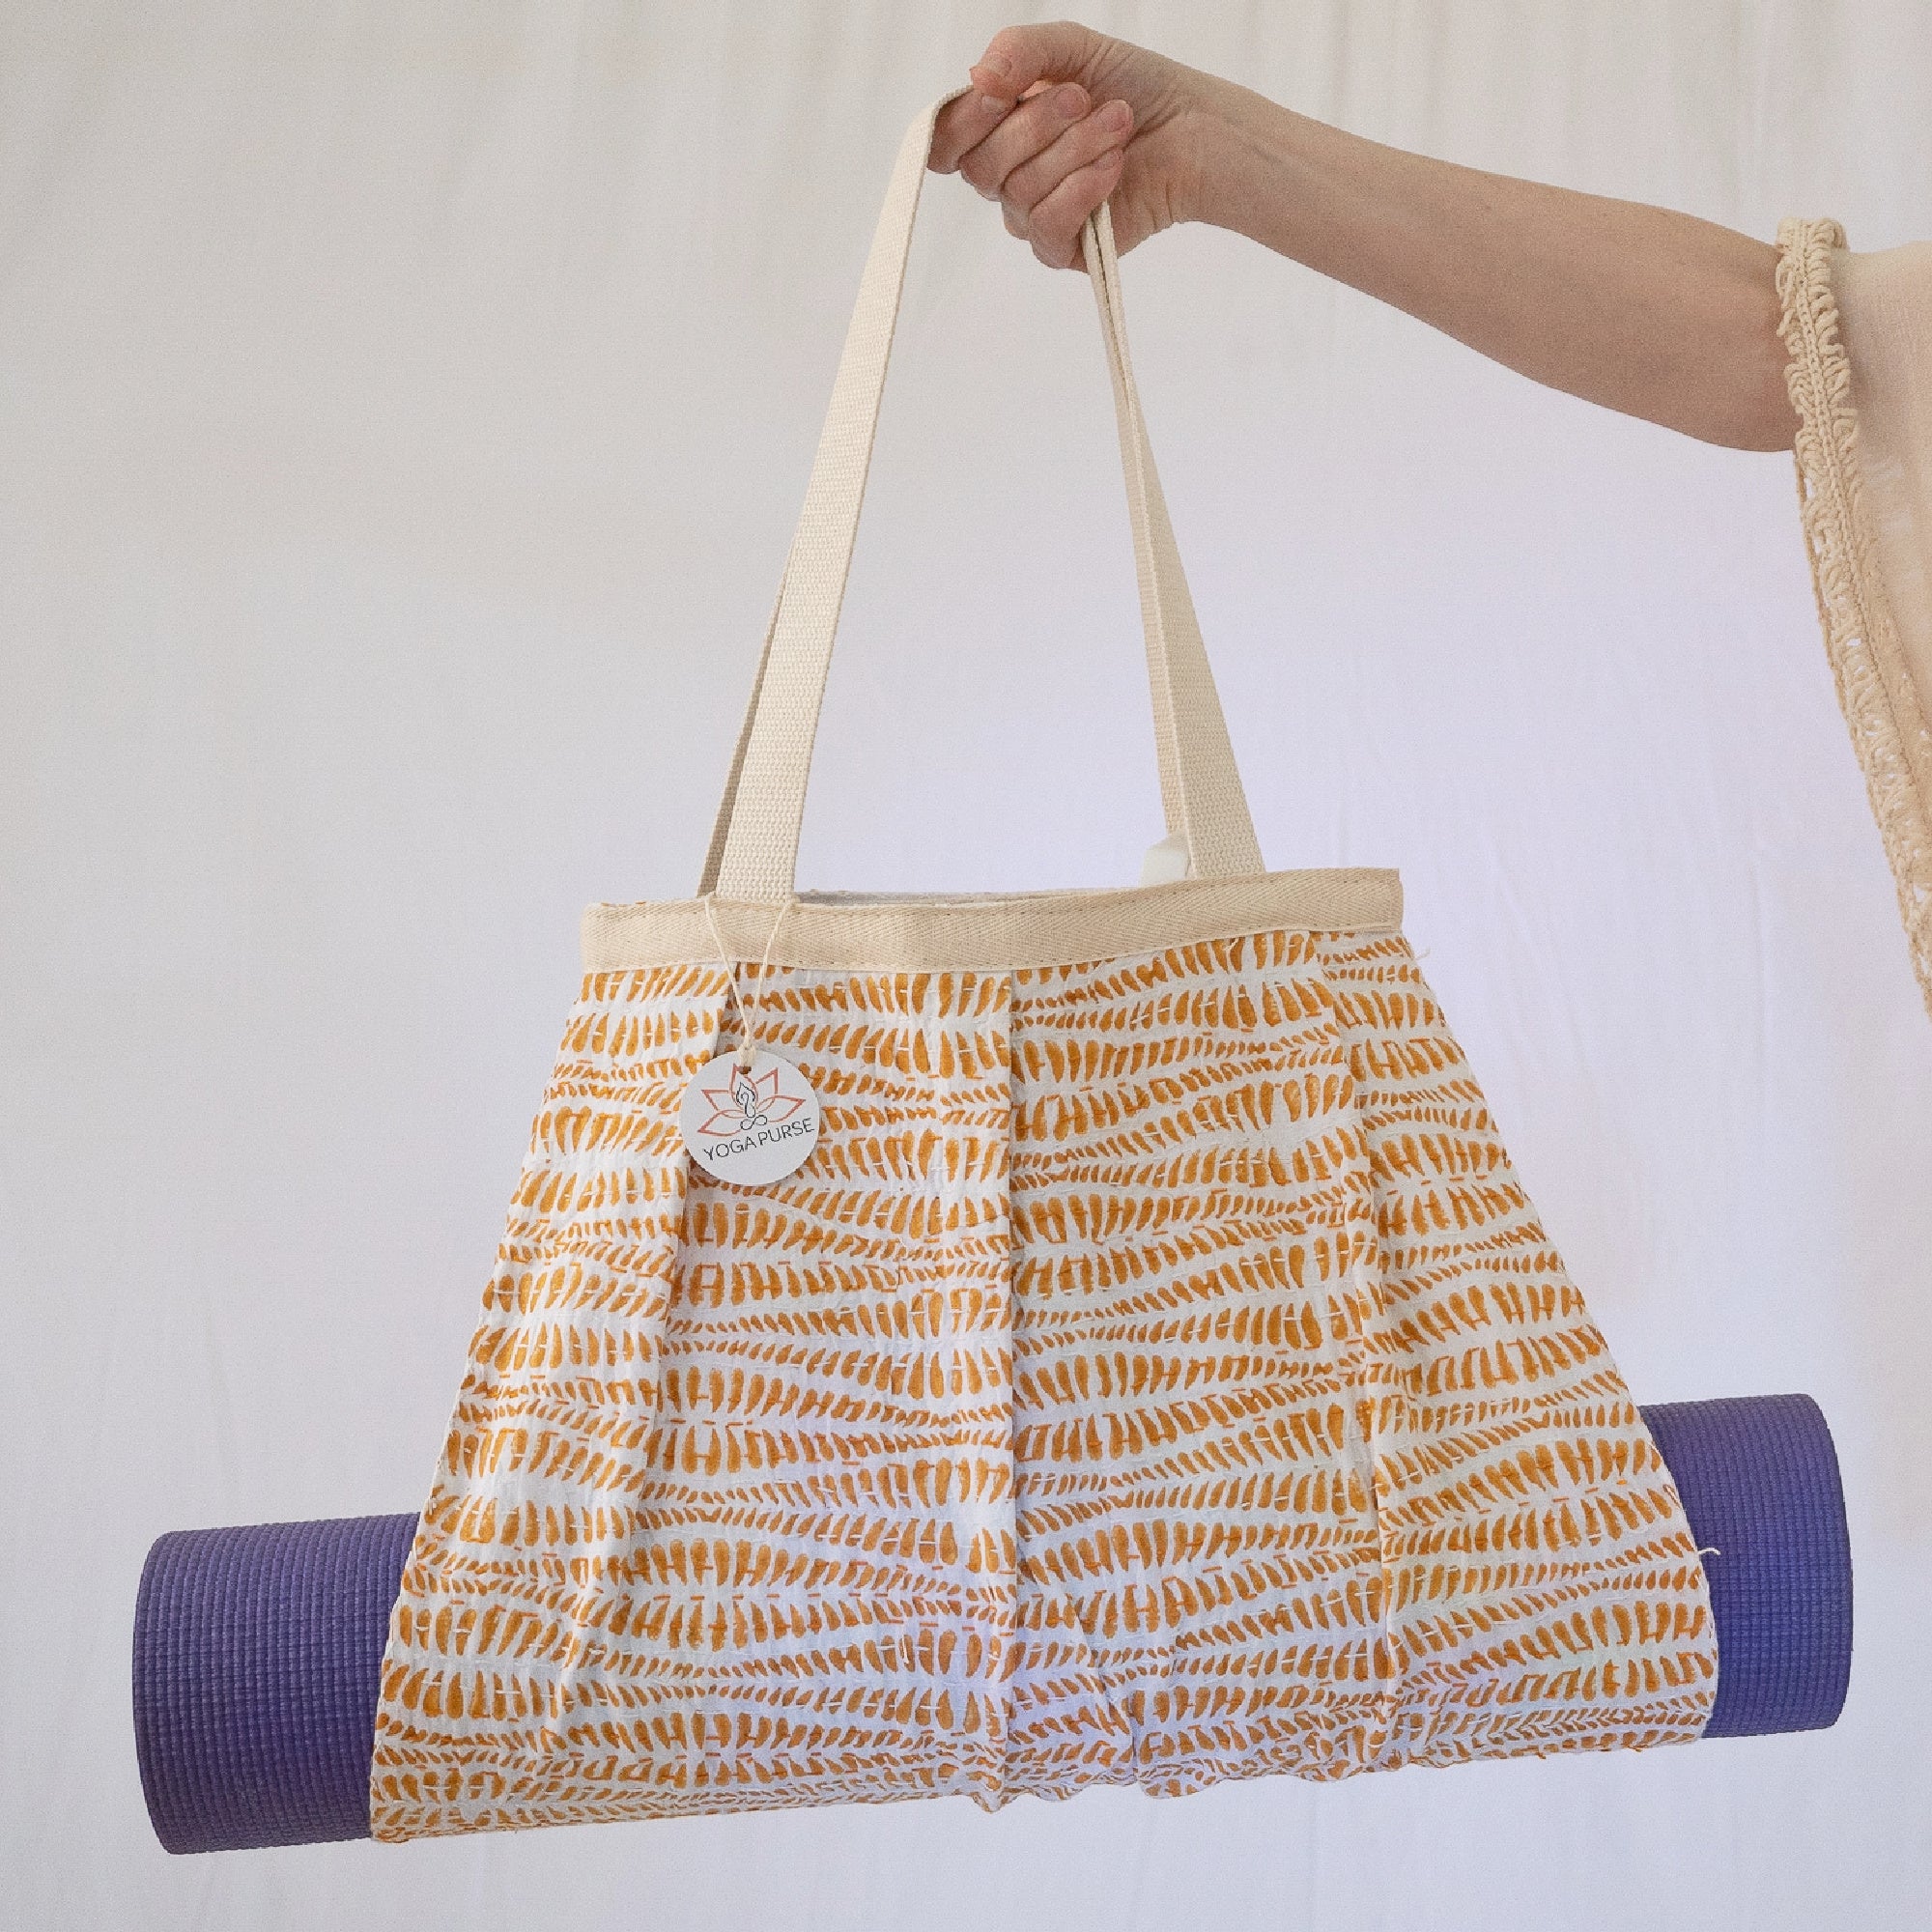 Yoga Mat Bag | Kantha Quilt | Mustard Yellow on White